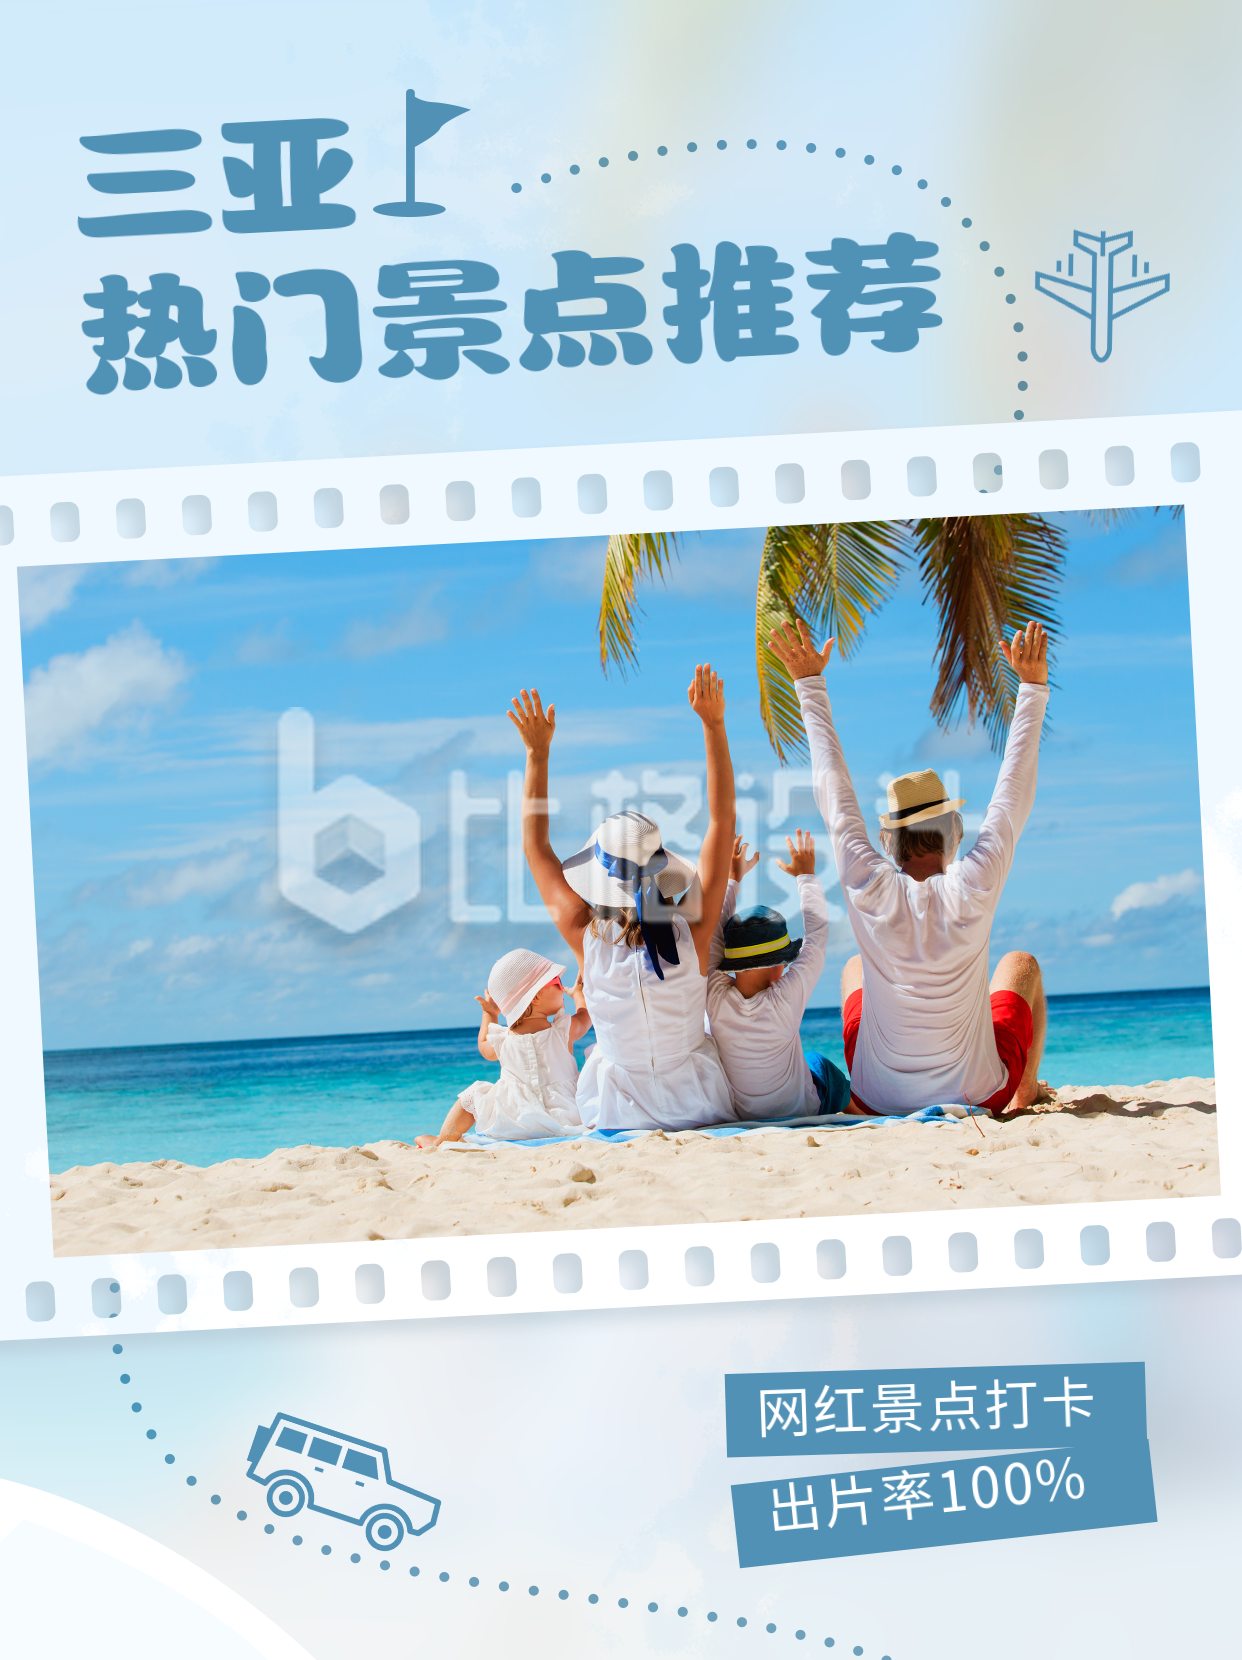 蓝色清新三亚旅游宣传小红书封面